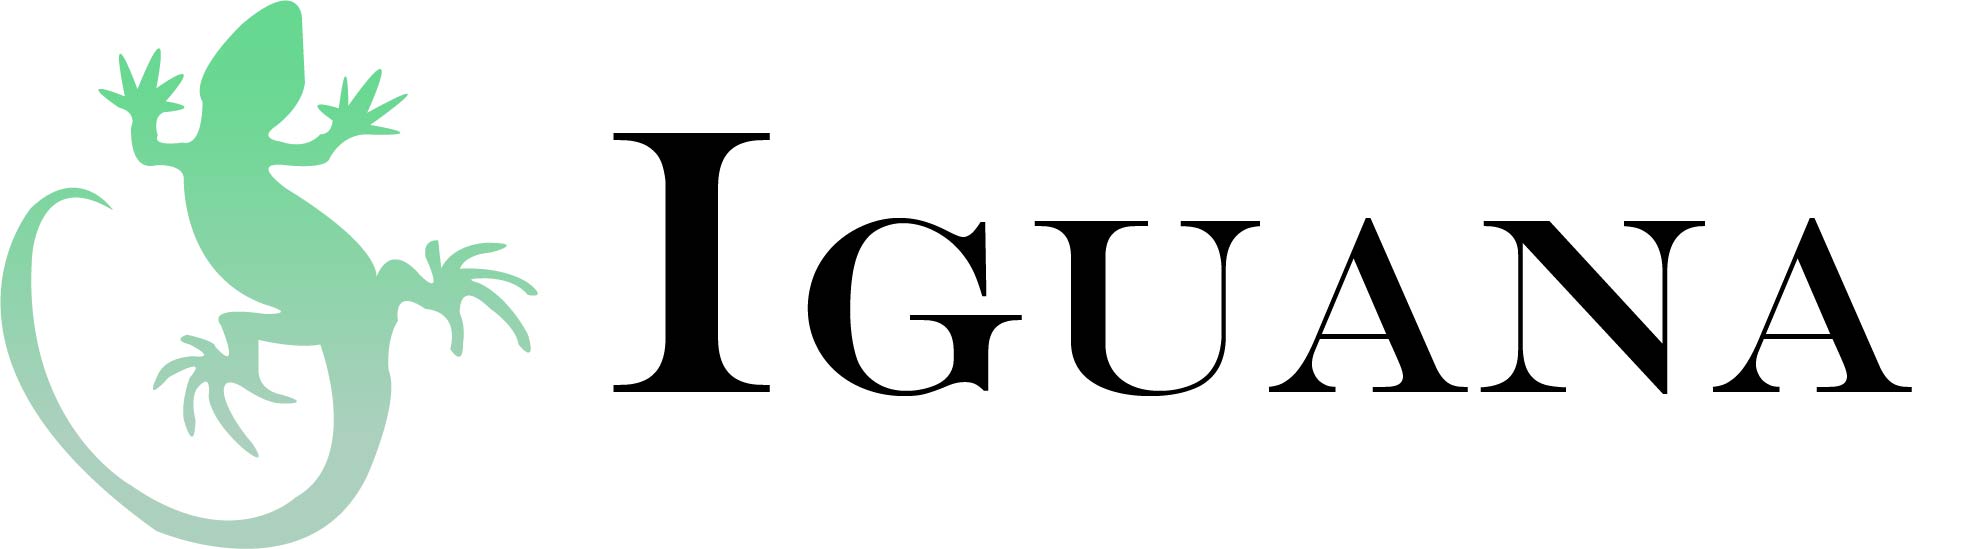 Iguana Logo